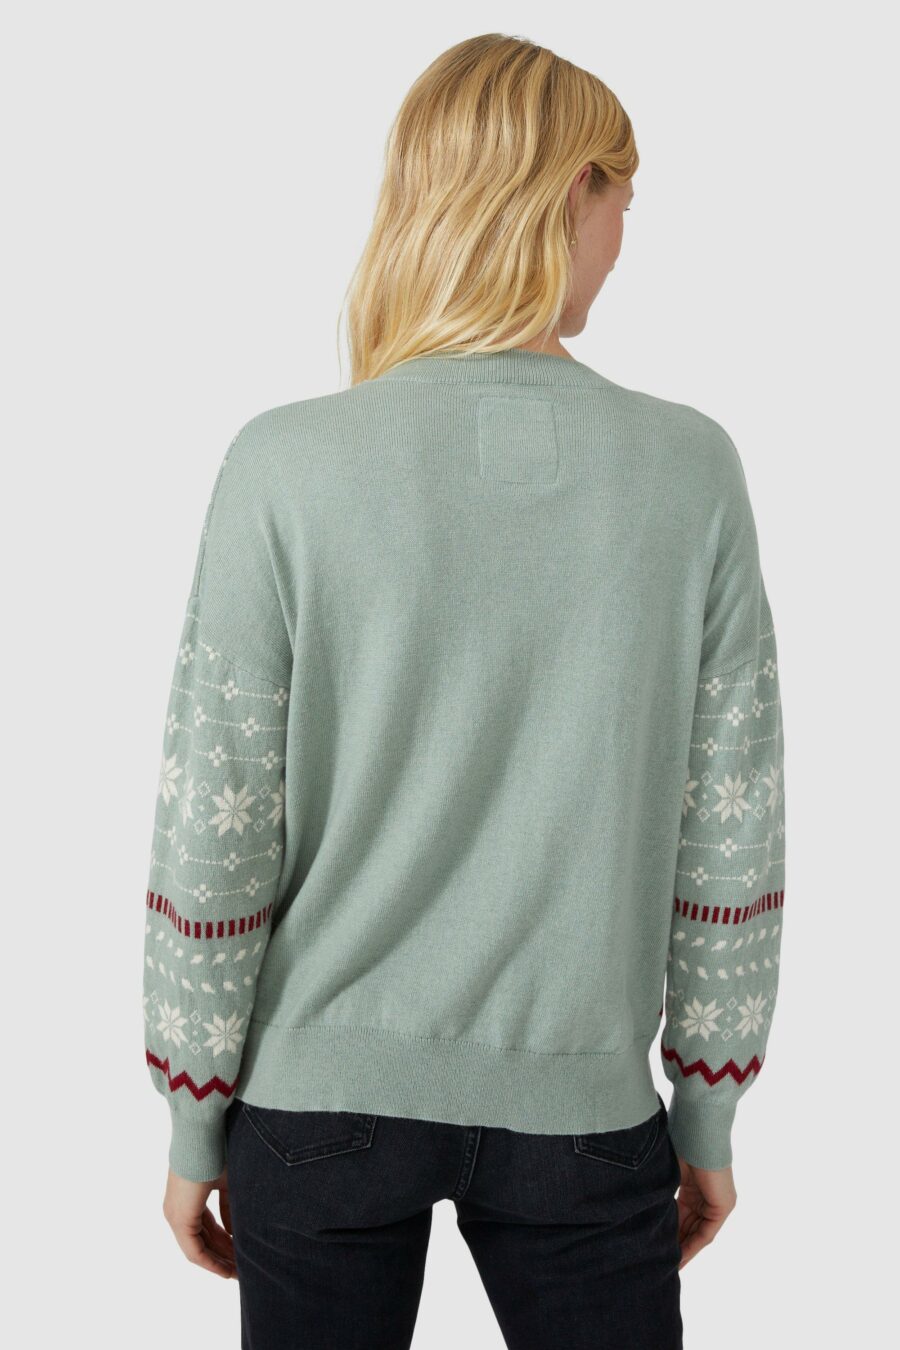 Mantaray-zielony-sweter-norweski-wzor-44